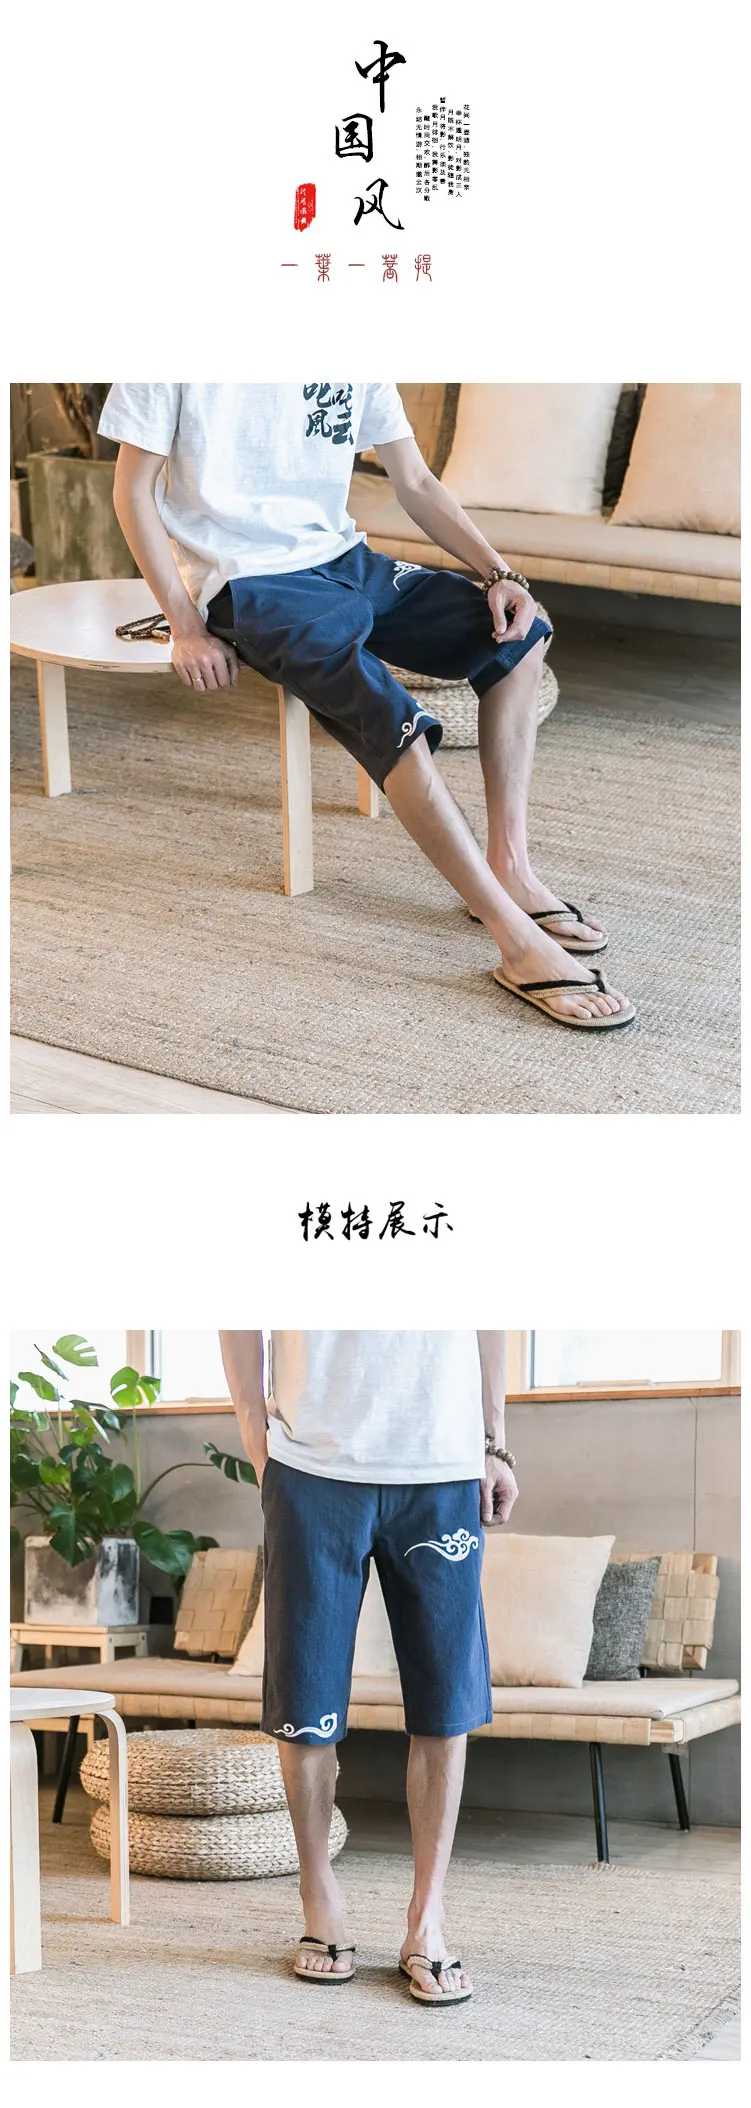 Китайский Стиль Для мужчин белье Короткие хлопковые шорты Для мужчин льняные бермуды Masculina Для мужчин s шорты Ho Для мужчин s мужской